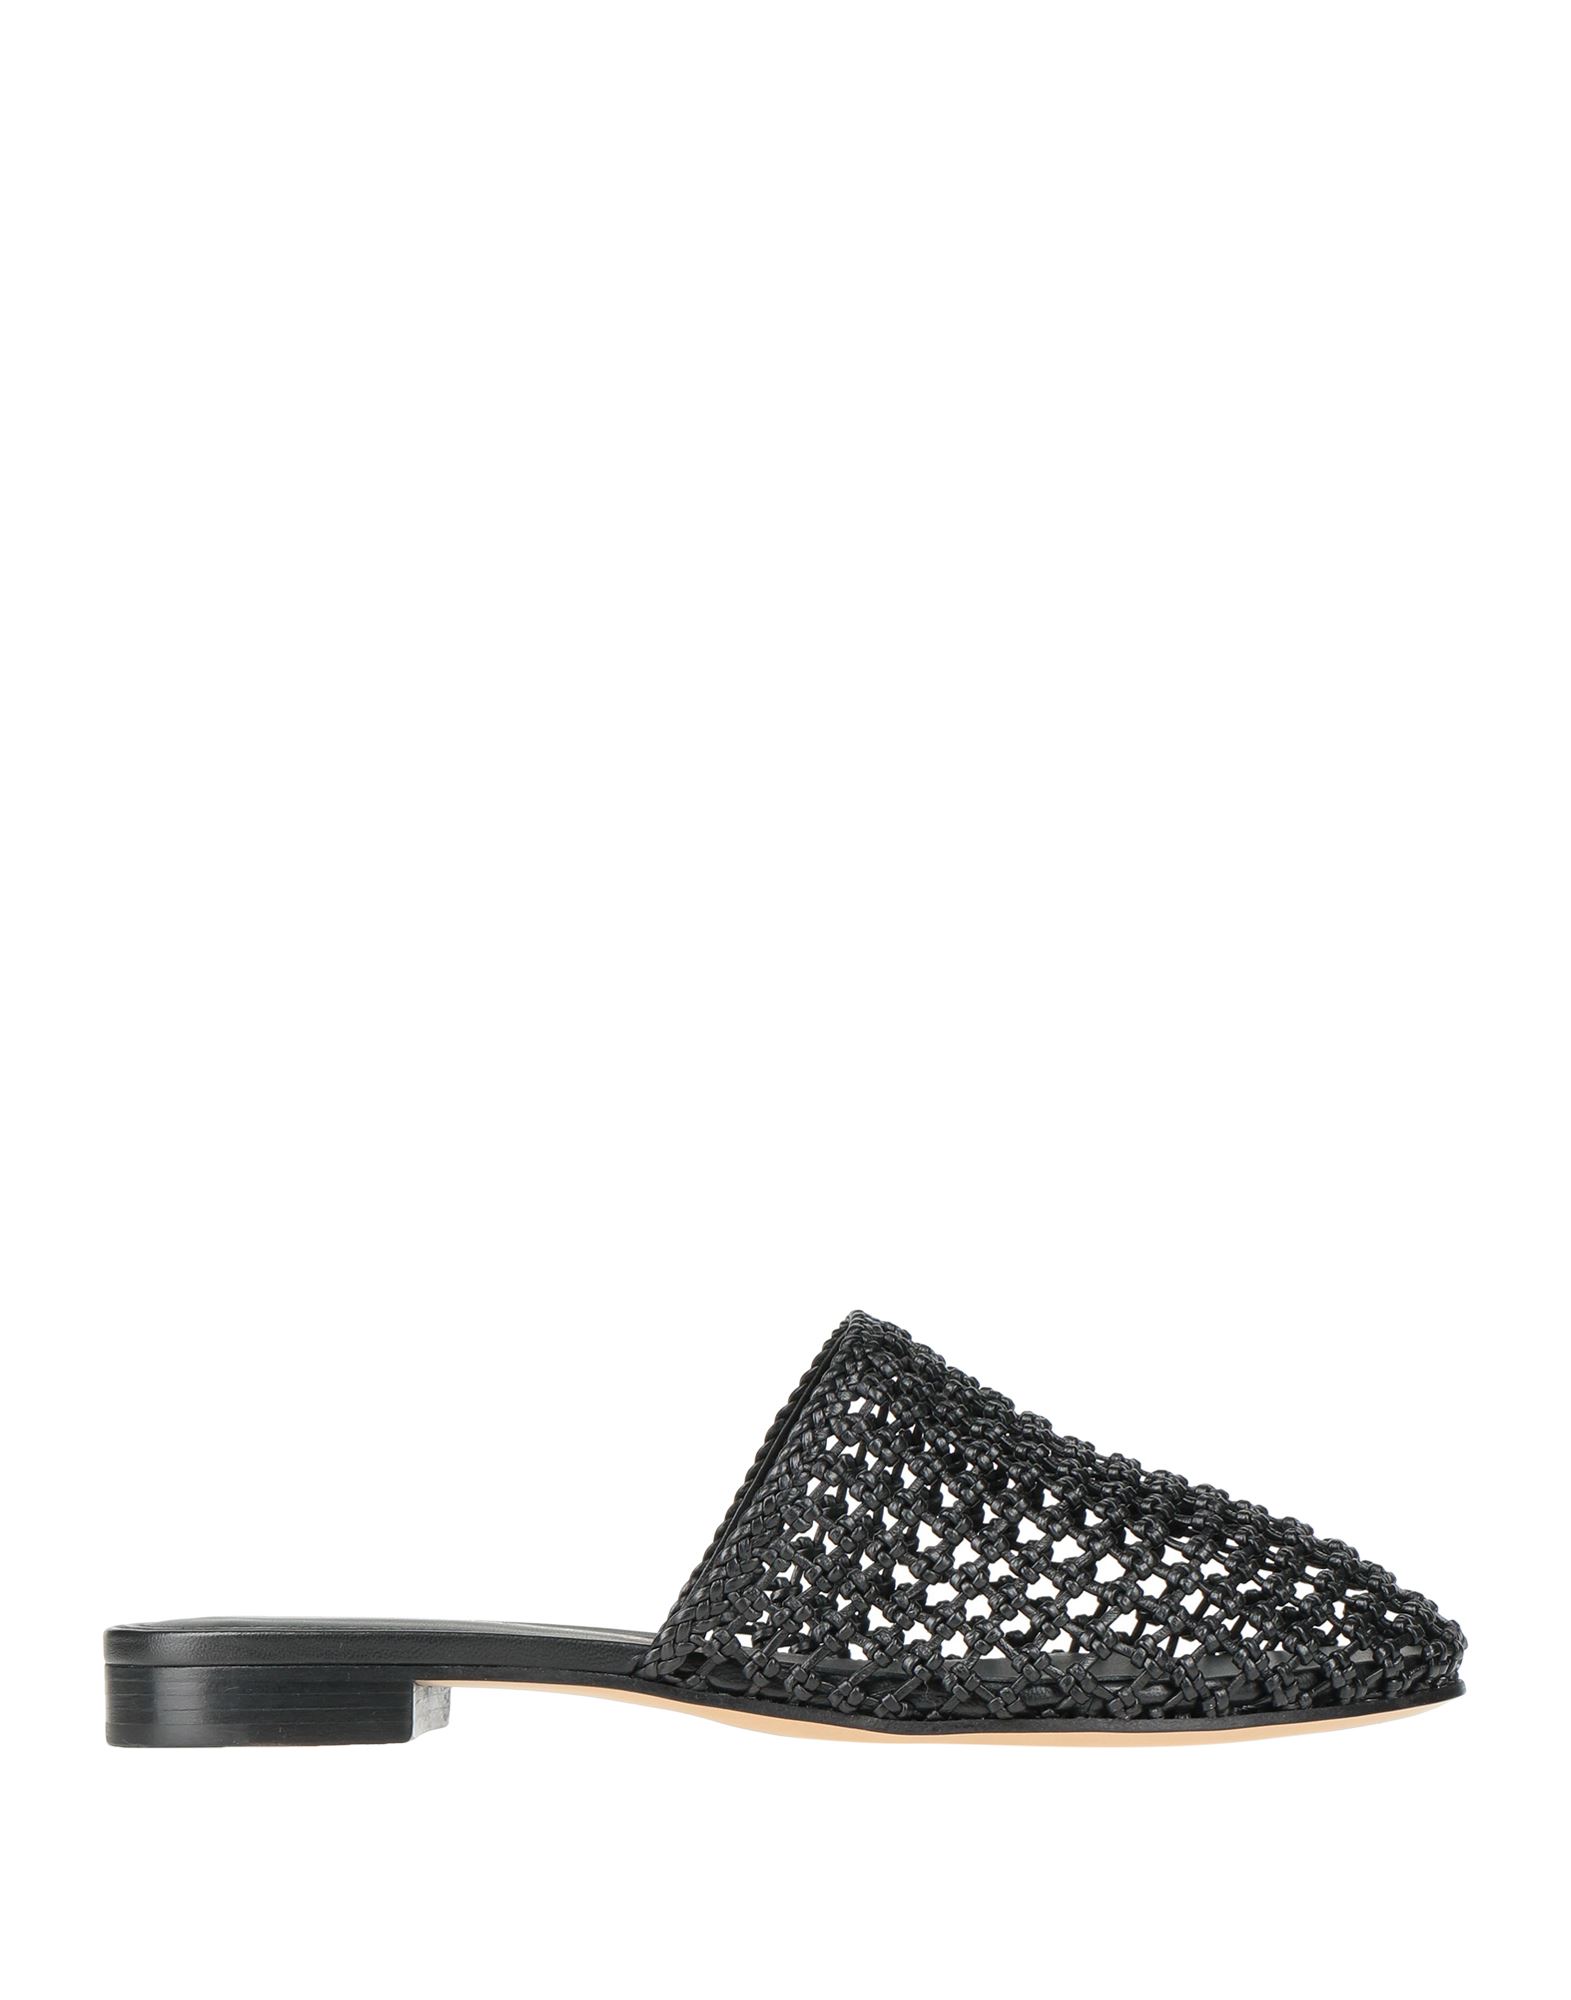 Shop Ferragamo Woman Mules & Clogs Black Size 6.5 Soft Leather